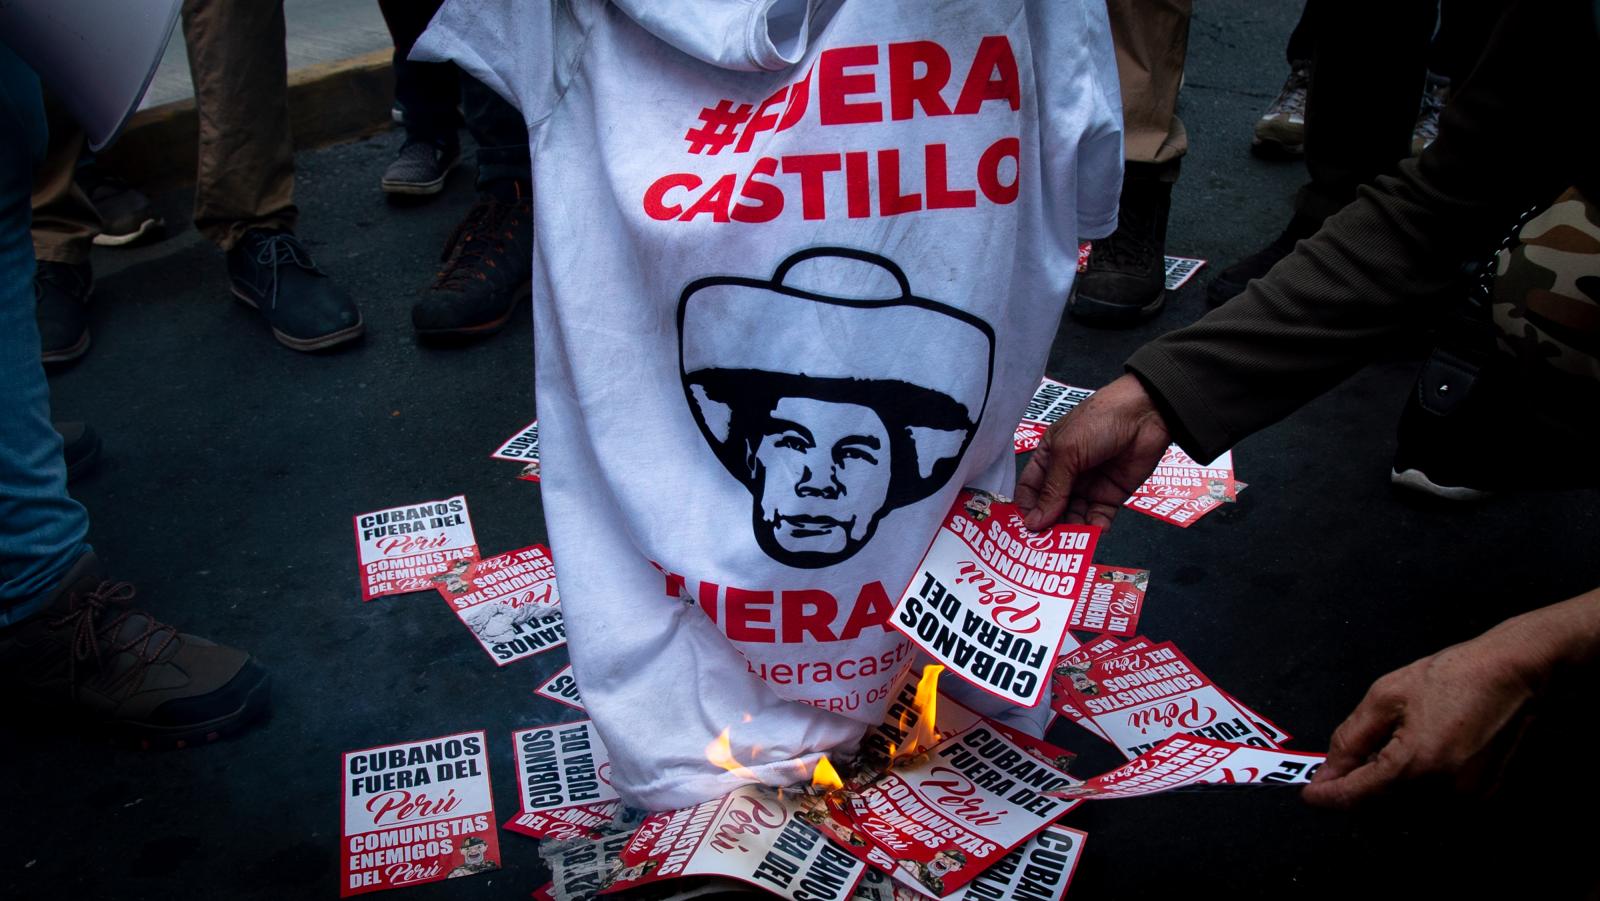 Opposers of Pedro Castillo, Per...udrey Cordova Rampant/Bloomberg